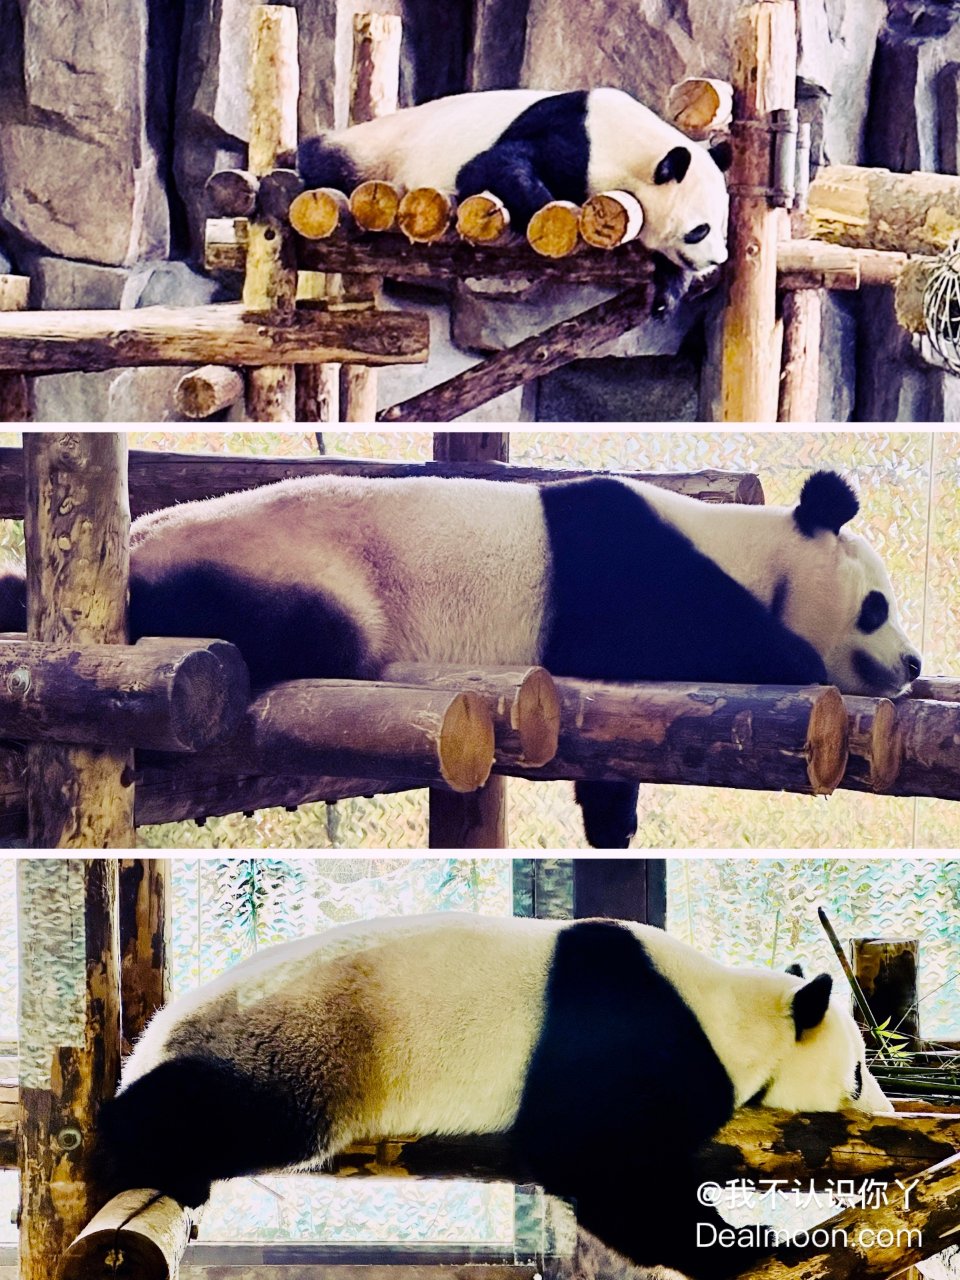 上海野生动物园😃坐车坐船看动物...